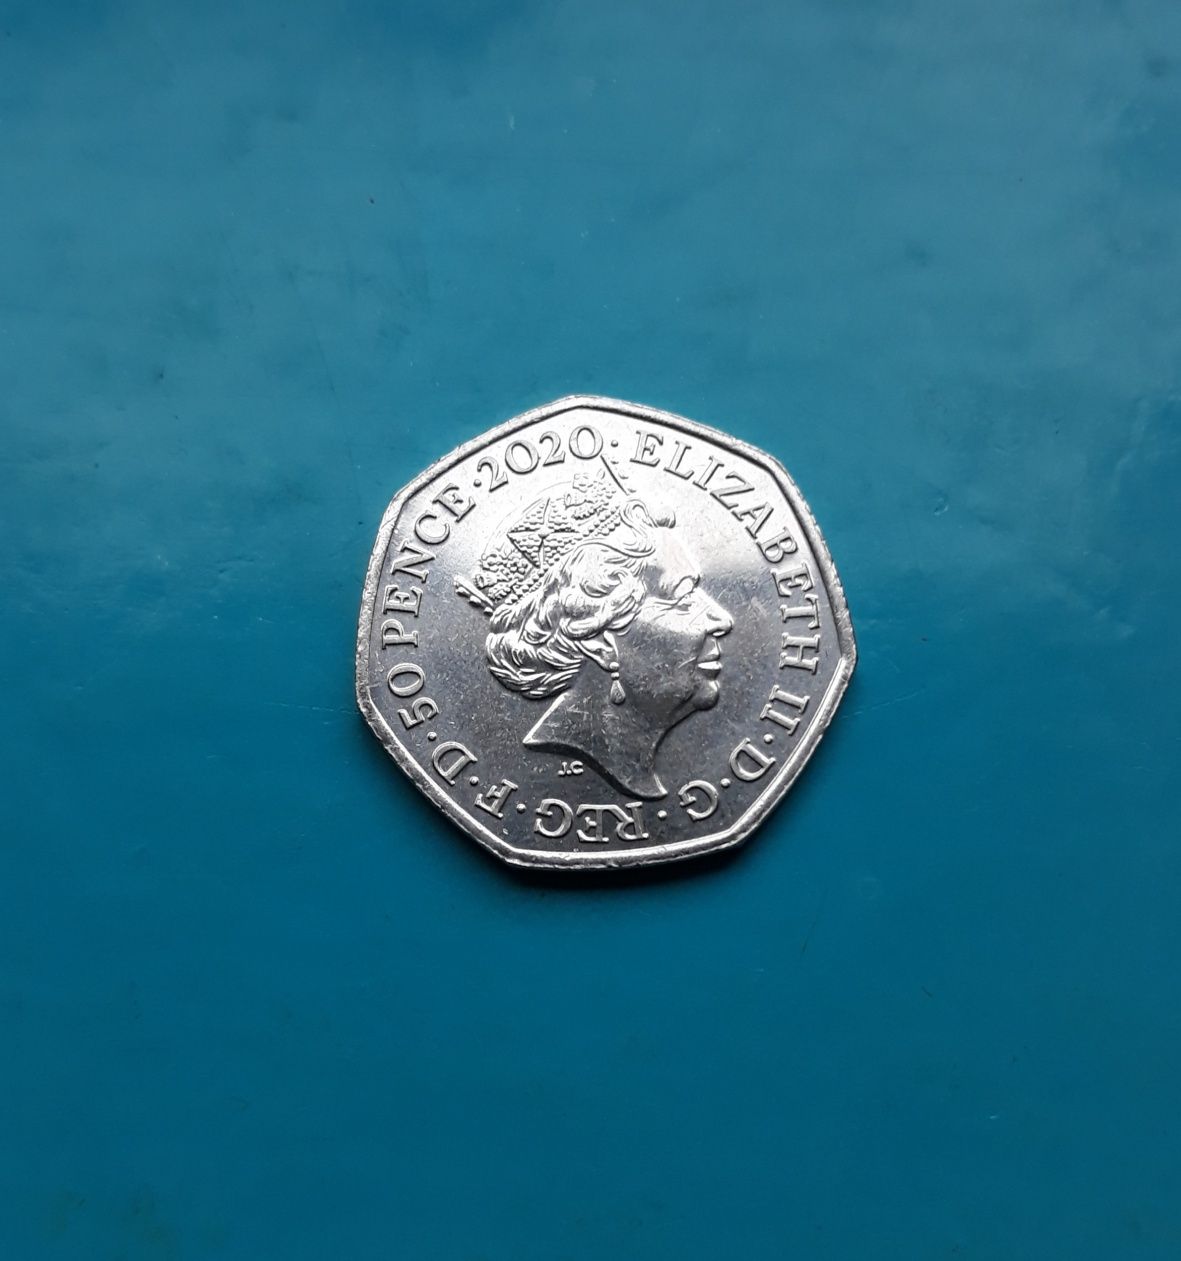 Moneta 50 pence 2020 Diversity Built Britain - Wielka Brytania (543)